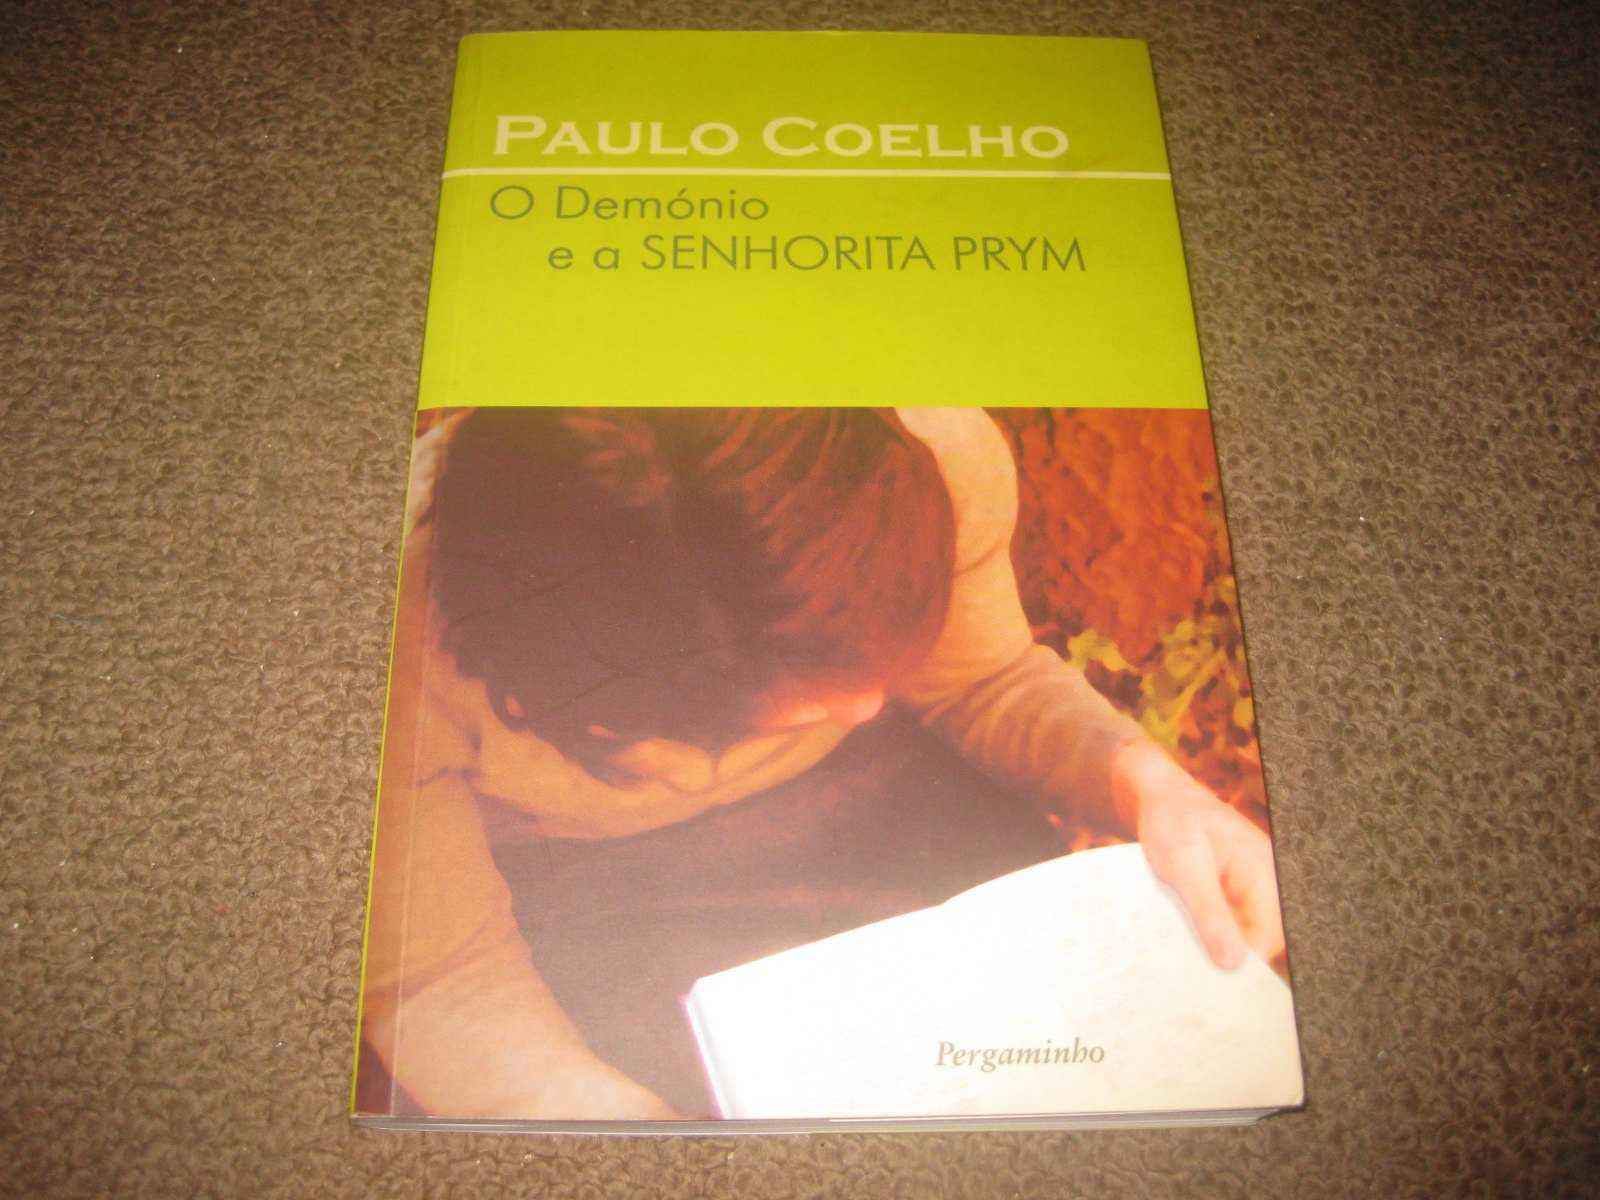 Livro "O Demónio e a Senhorita Prym" de Paulo Coelho